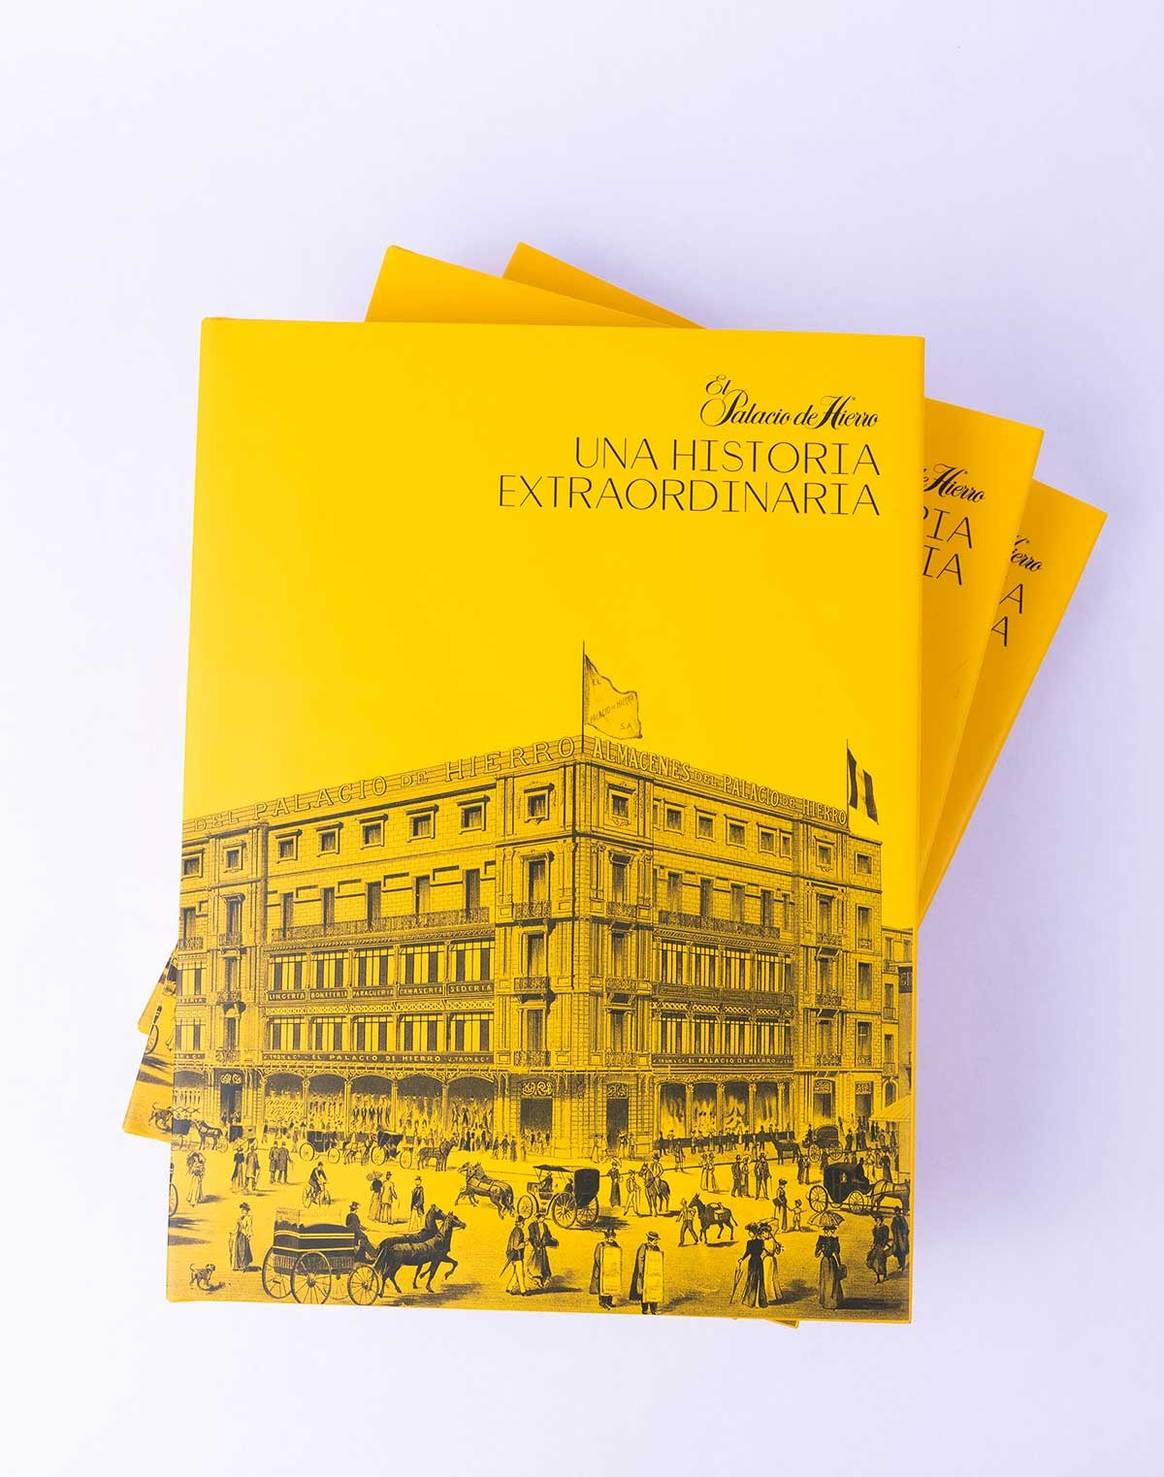 El Palacio de Hierro lanza un libro que cuenta sus 130 años de historia